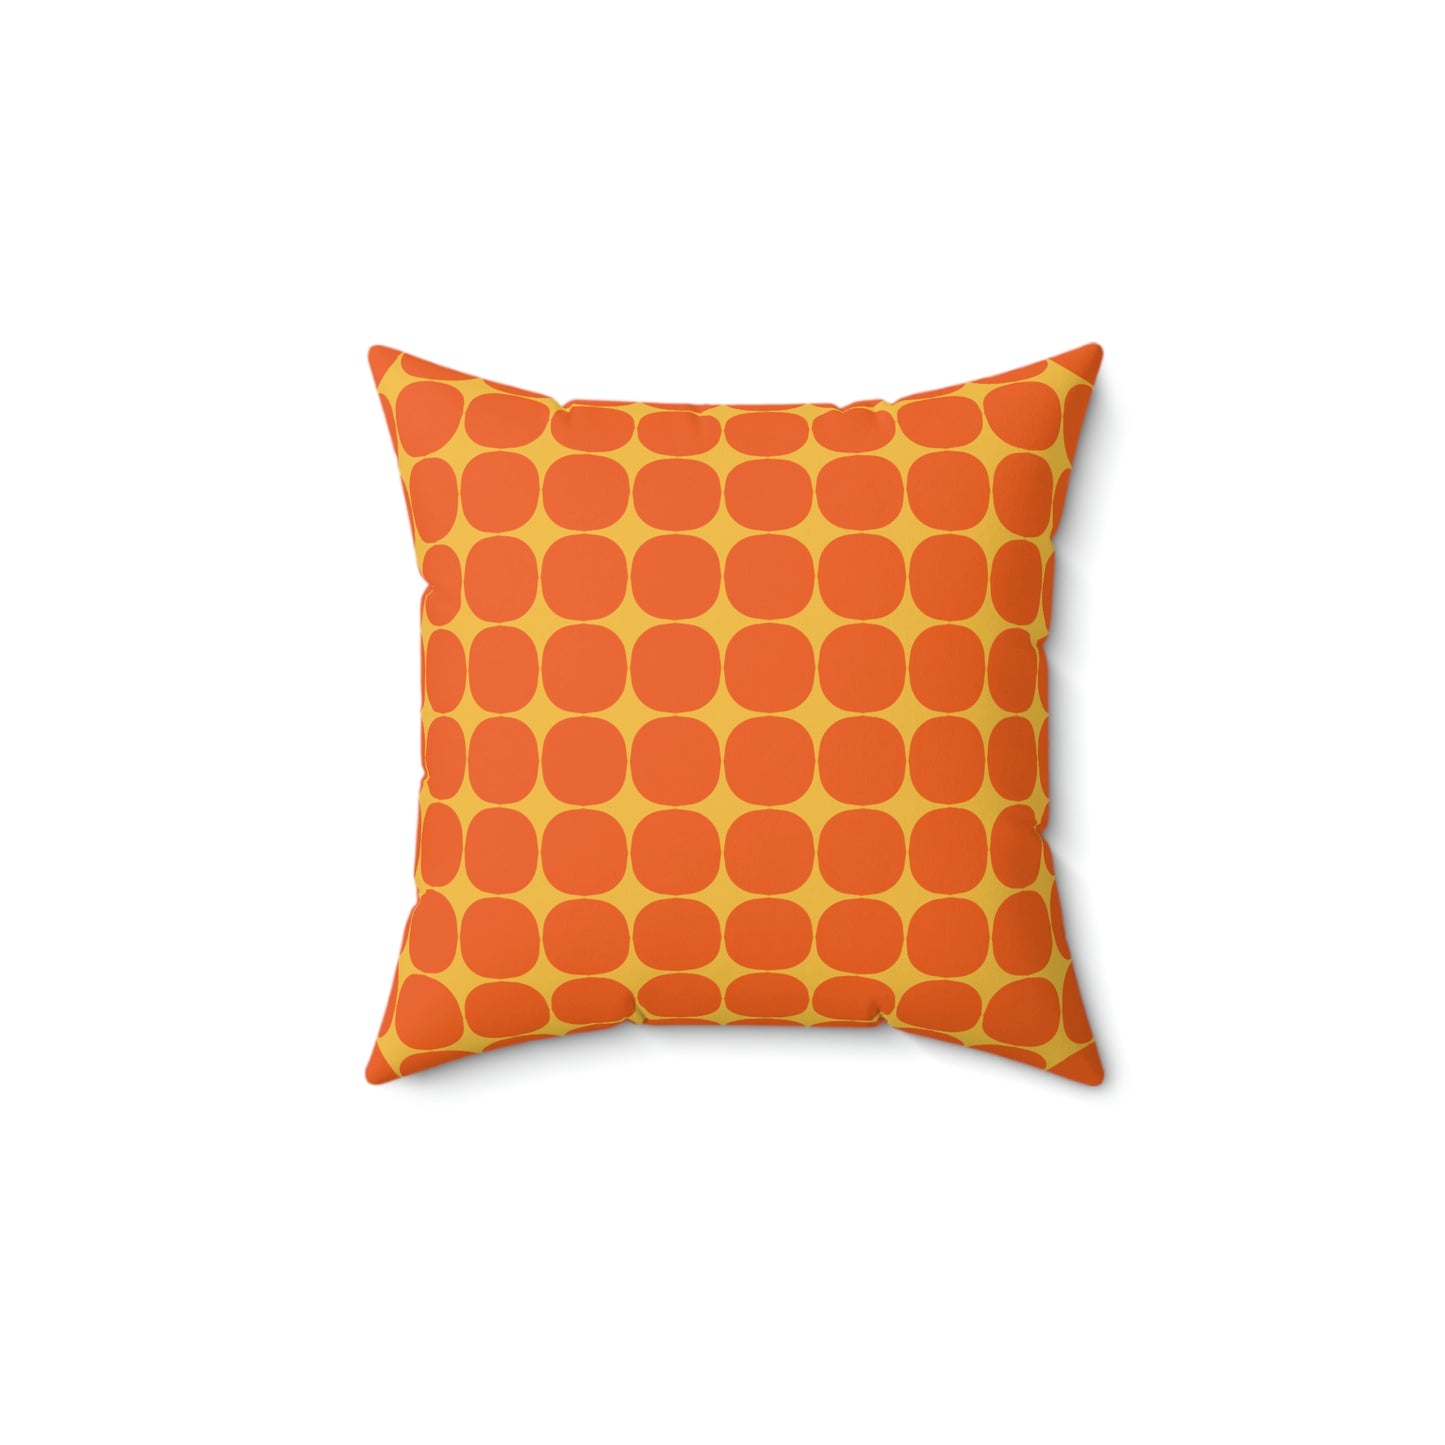 Spun Polyester Square Pillow Case “Rhombus Star on Orange”